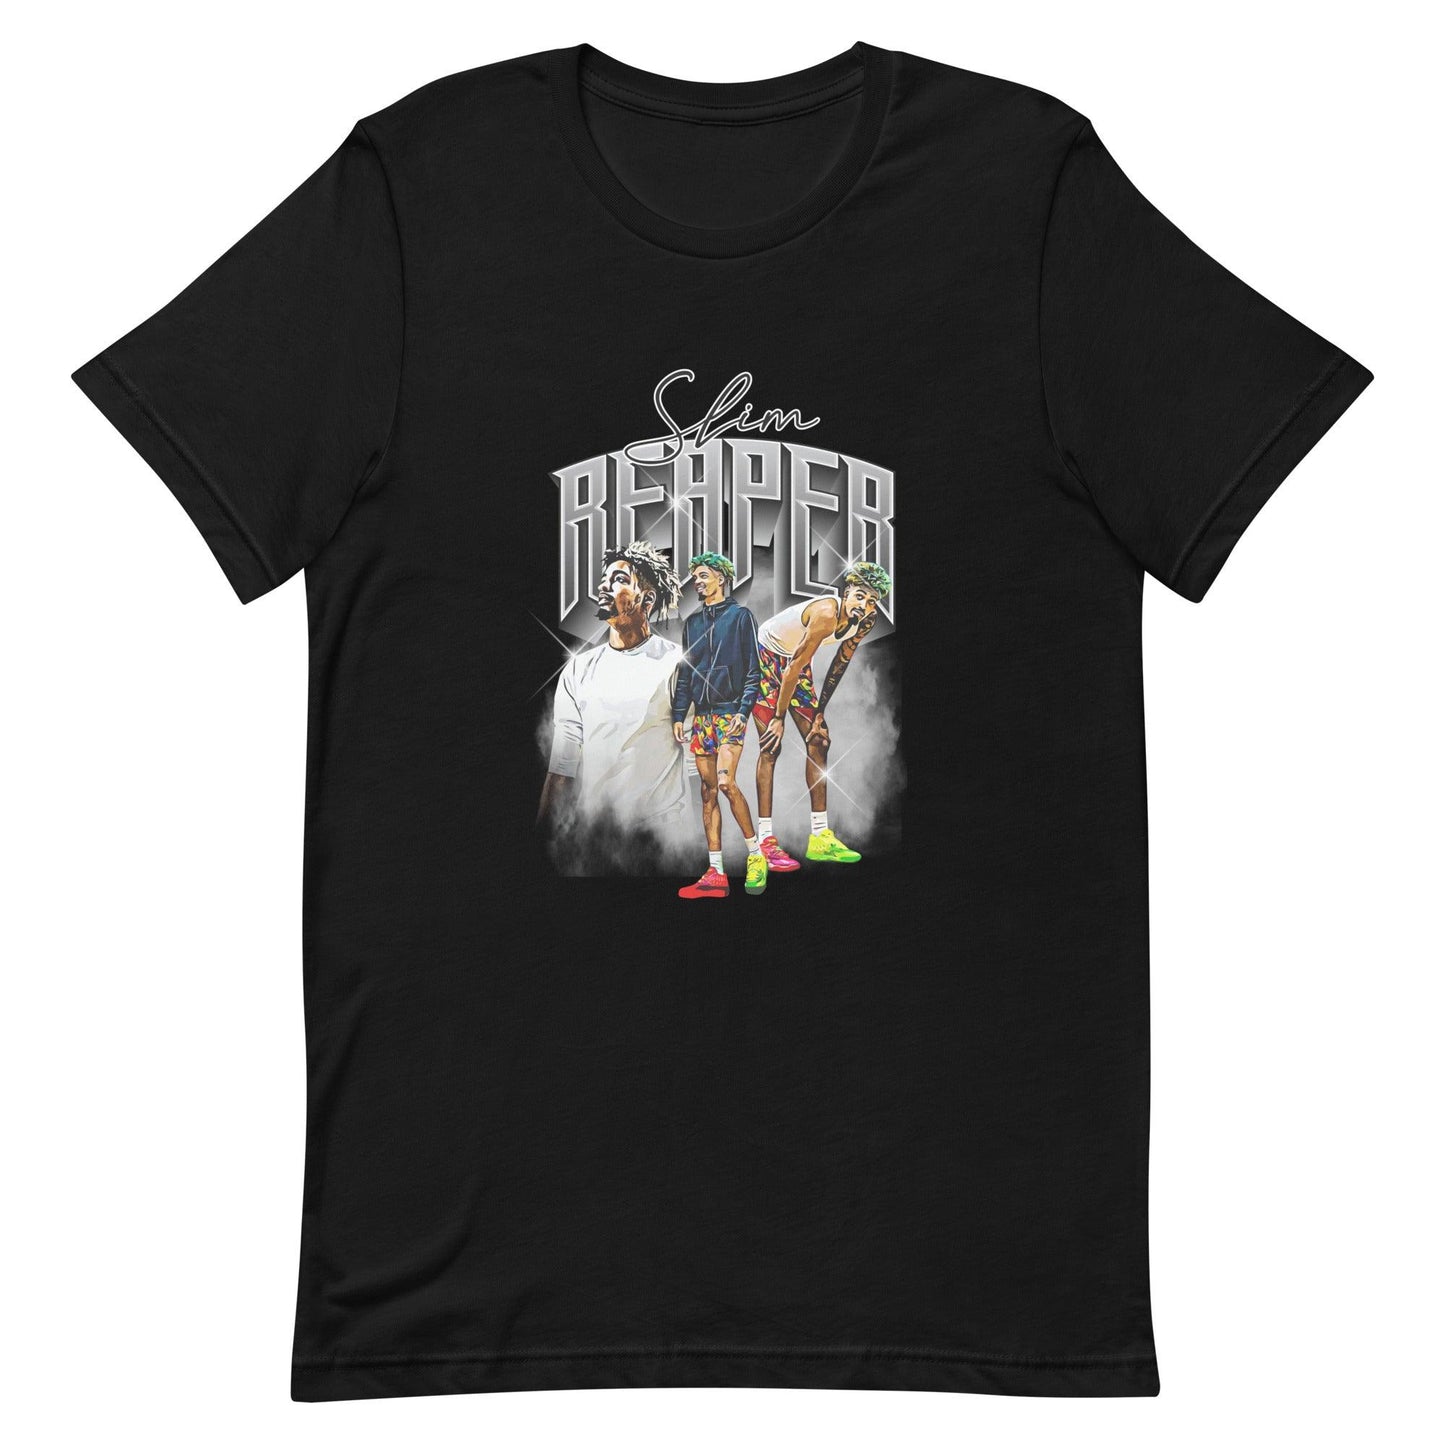 Slim Reaper “Heritage” t-shirt - Fan Arch